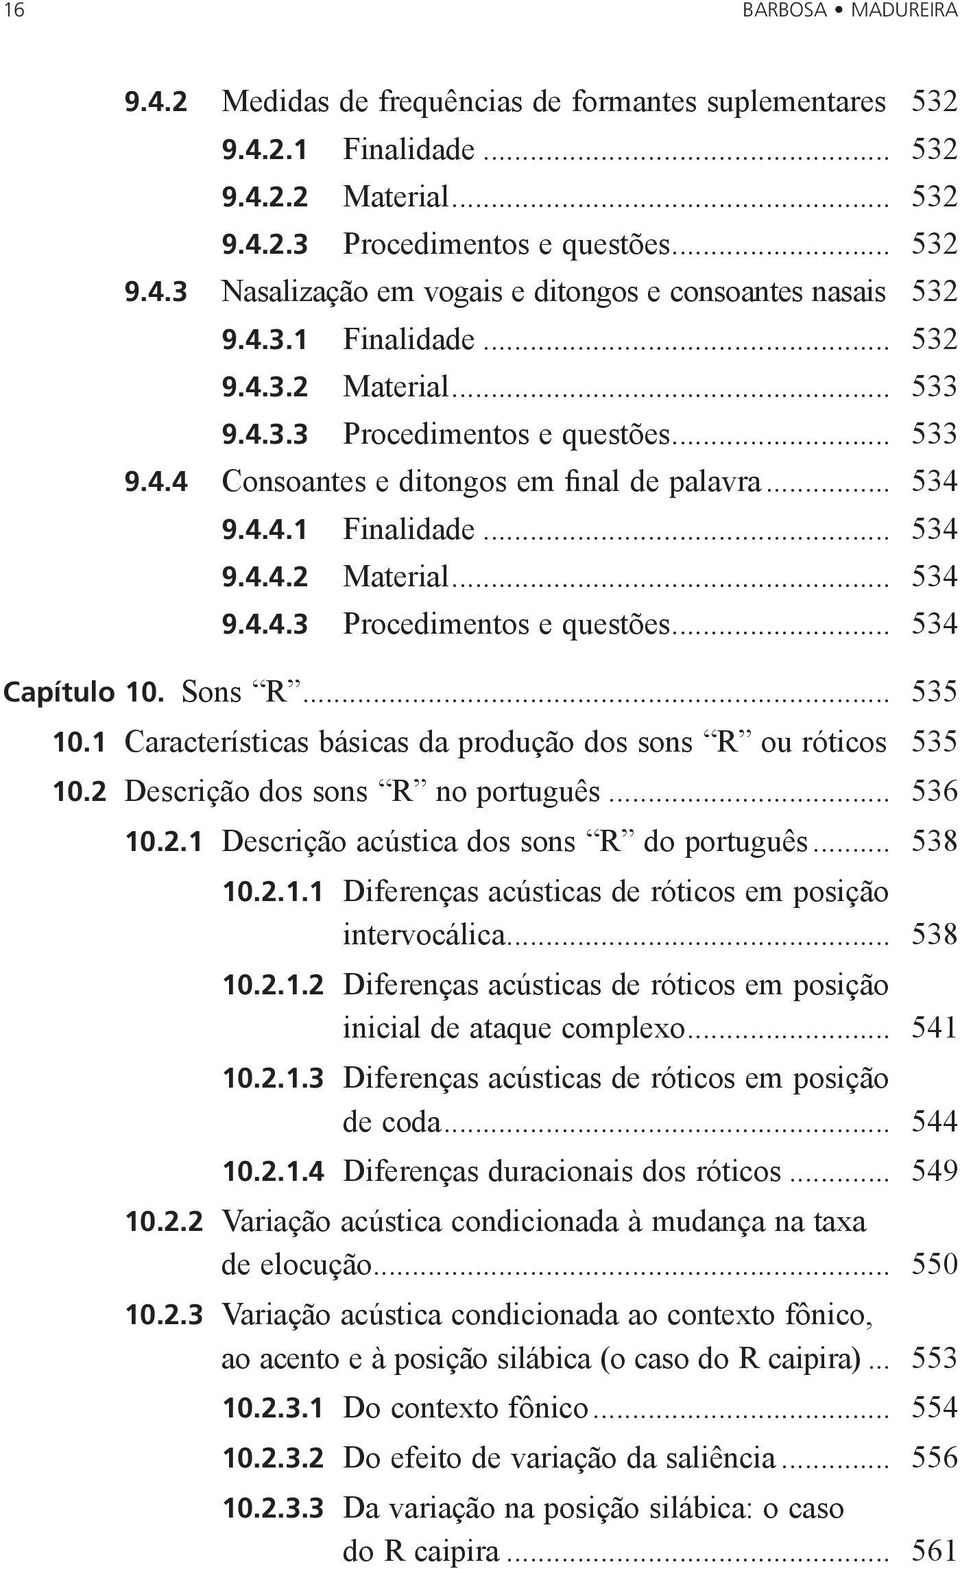 Sons R... 535 10.1 Características básicas da produção dos sons R ou róticos. 535 10.2 Descrição dos sons R no português... 536 10.2.1 Descrição acústica dos sons R do português... 538 10.2.1.1 Diferenças acústicas de róticos em posição intervocálica.